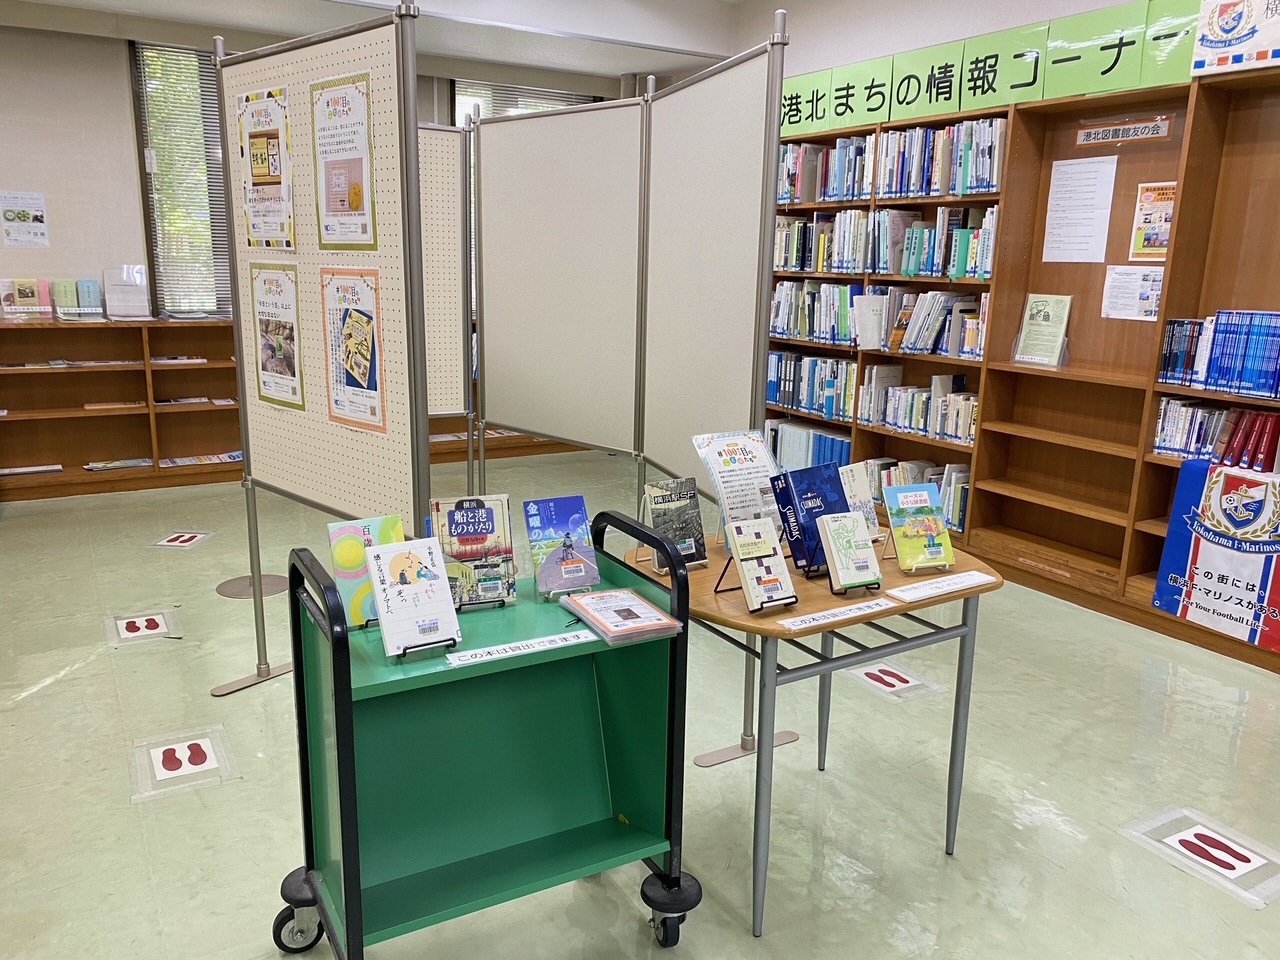 横浜市立図書館 港北図書館のお知らせ 市立図書館 開業100周年を記念した 100ページ目のことばたち 展示を開催中です 1階まちの情報コーナーにて 10月31日 日 まで 心打つことばをきっかけに 素敵な本に出会えますように 横浜市港北図書館